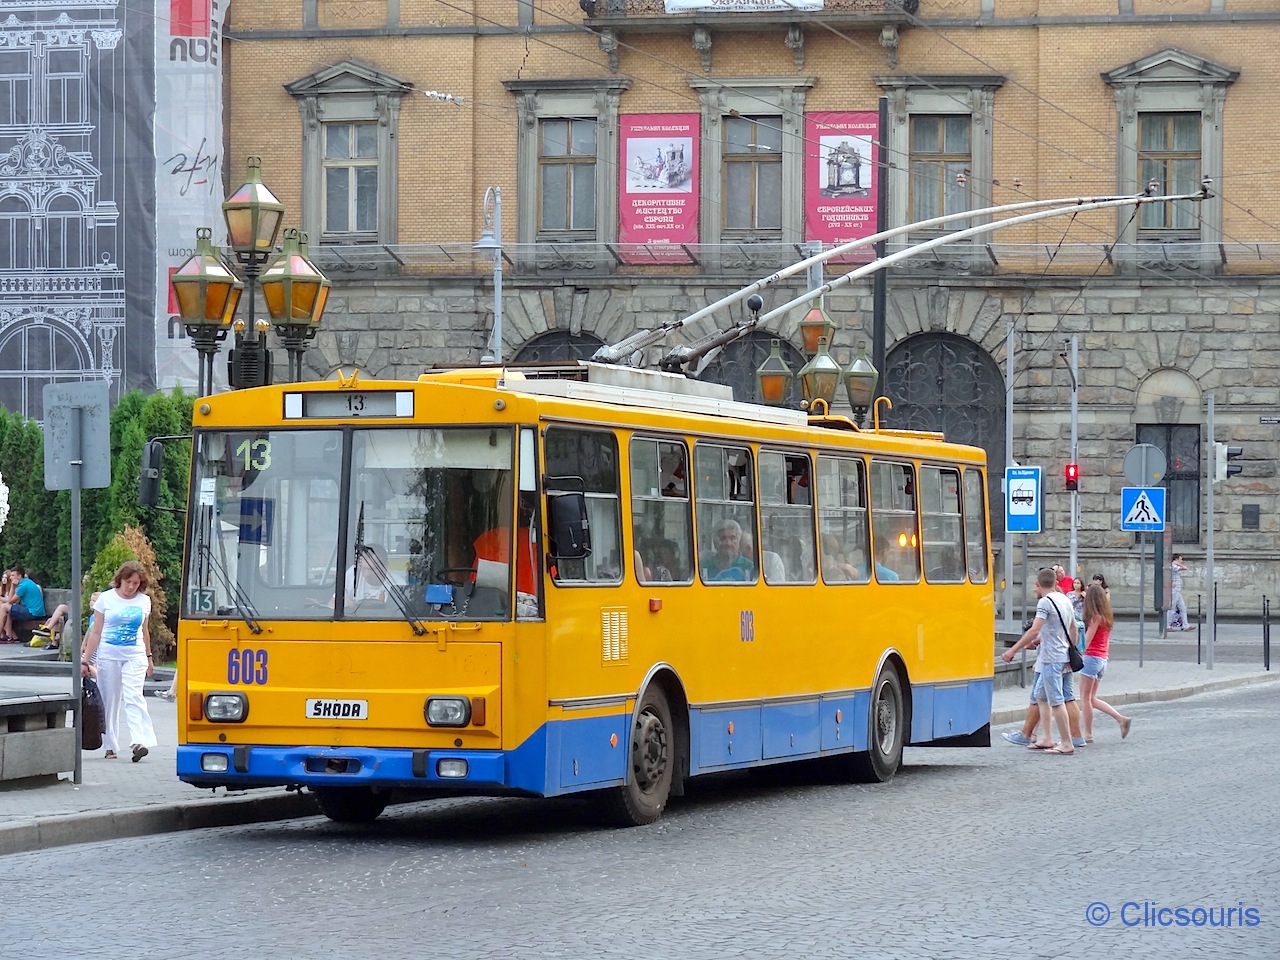 Lviv trolley-bus